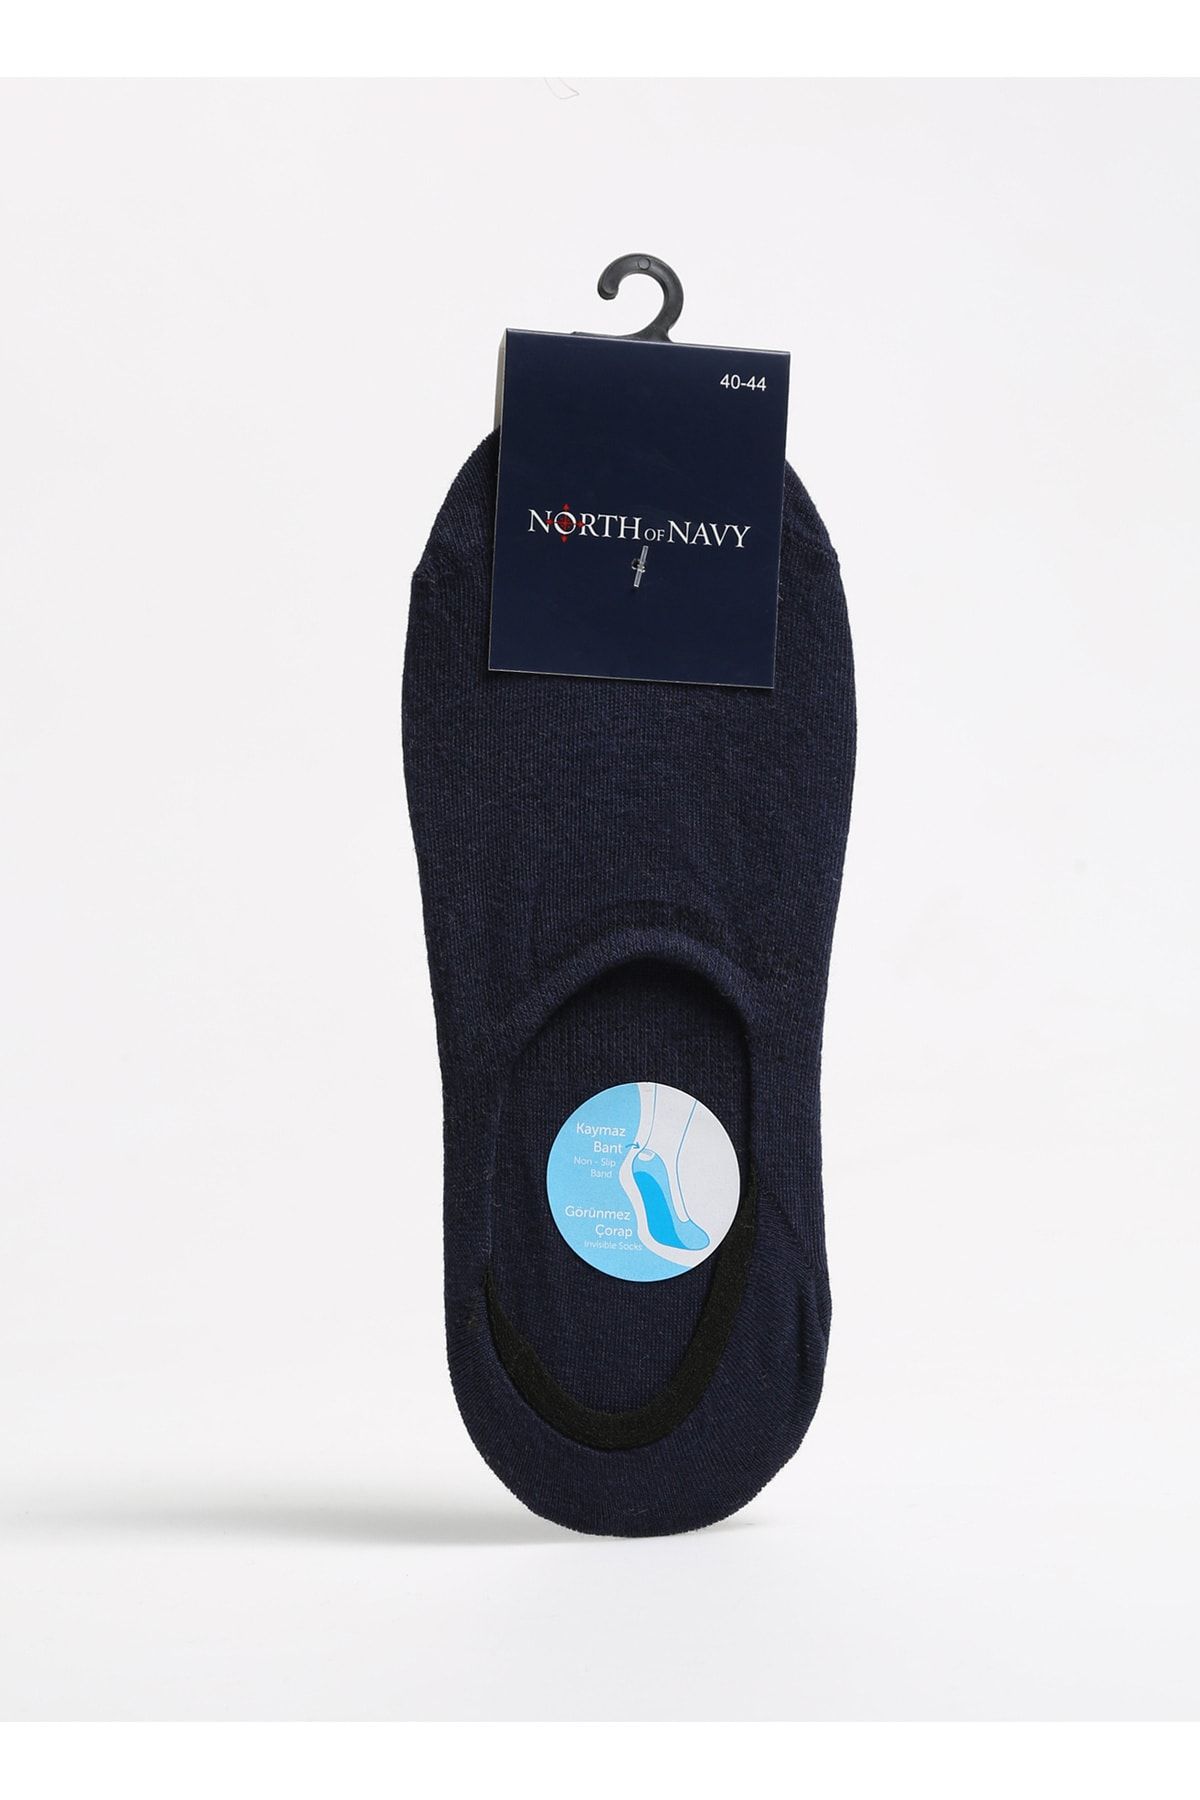 North of Navy Lacivert Erkek Babet Çorabı